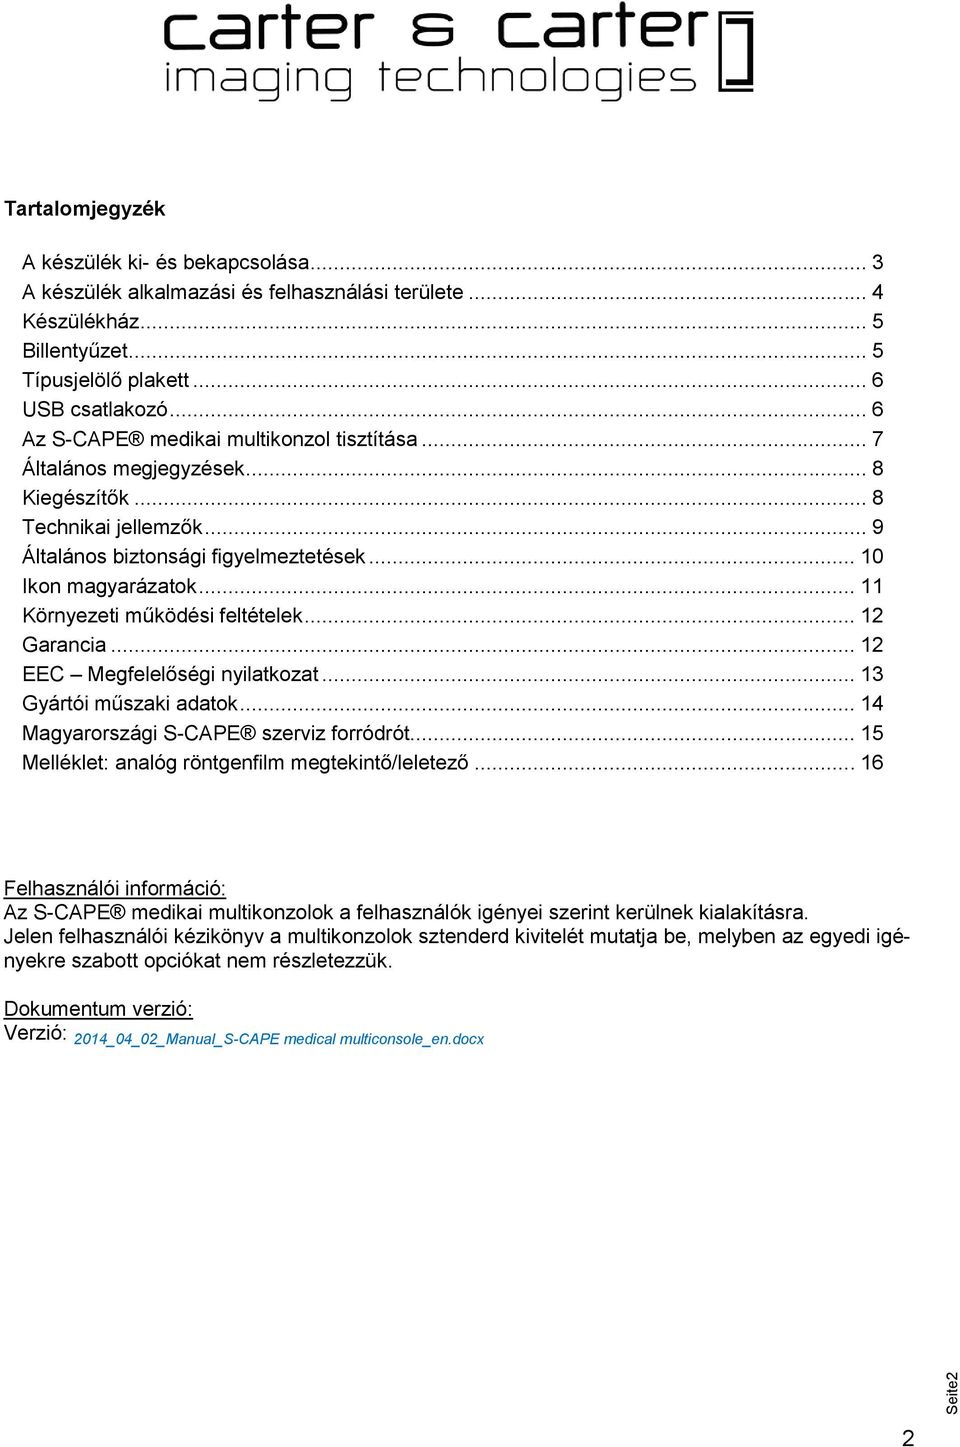 .. 11 Környezeti működési feltételek... 12 Garancia... 12 EEC Megfelelőségi nyilatkozat... 13 Gyártói műszaki adatok... 14 Magyarországi S-CAPE szerviz forródrót.